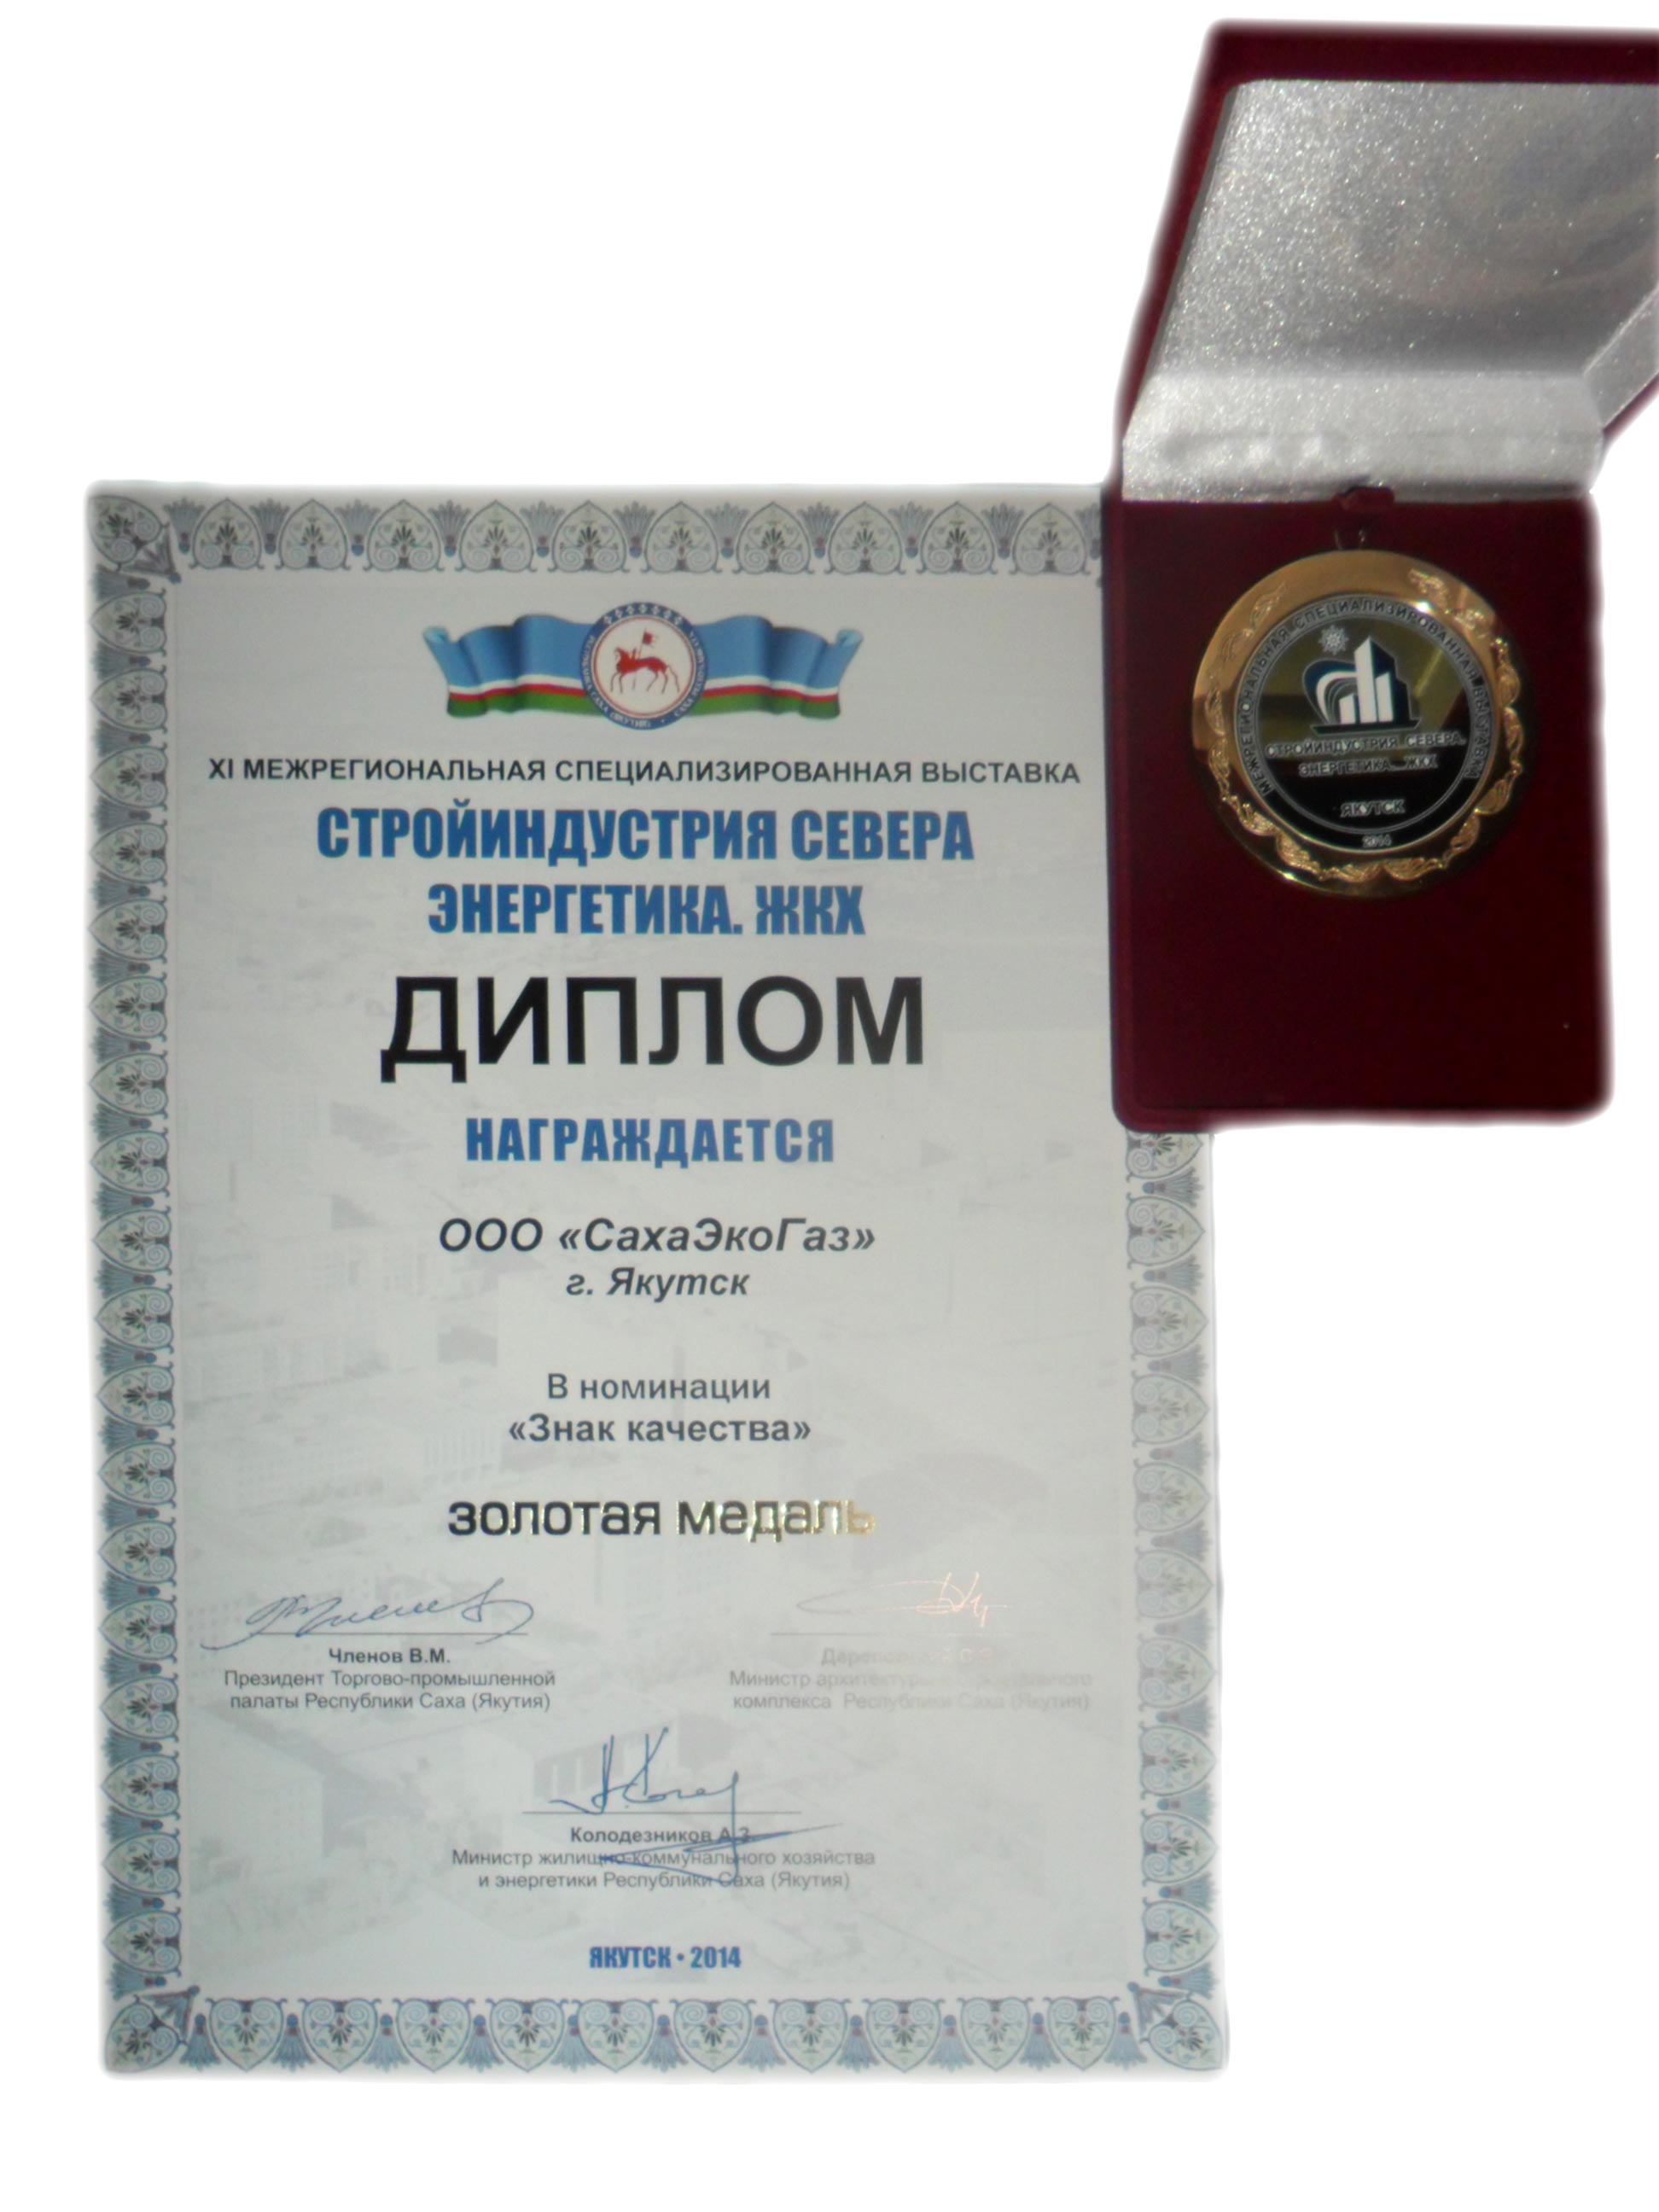  Золотая медаль на выставке «Стройиндустрия Севера Энергетика. ЖКХ»